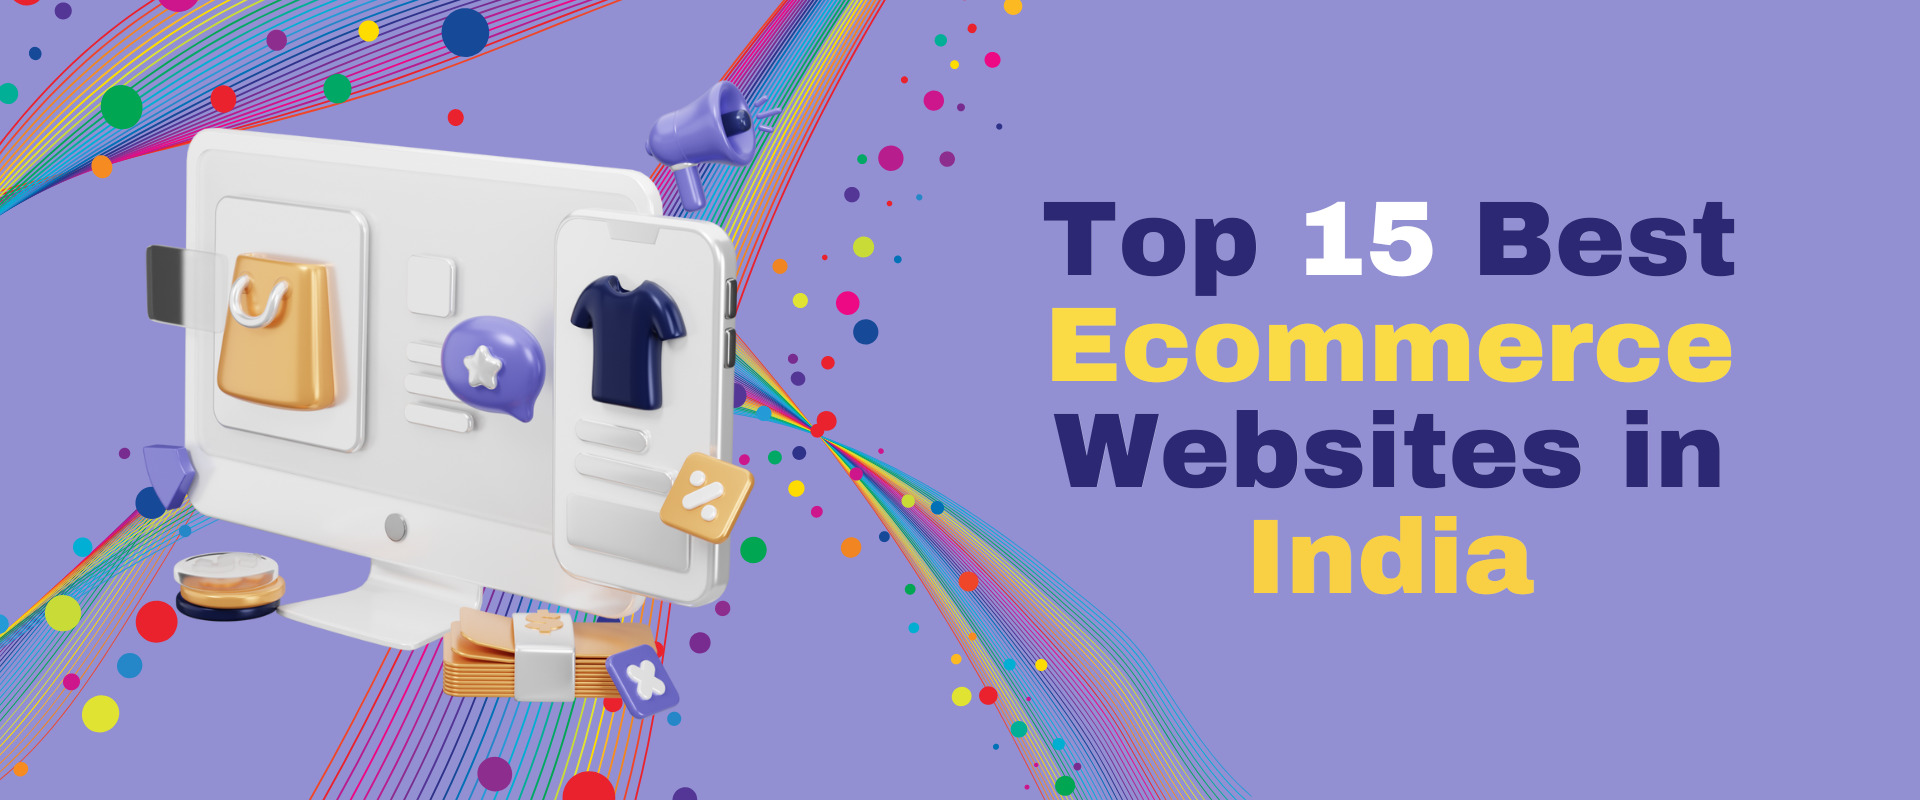 Top 15 Best Ecommerce Websites in India